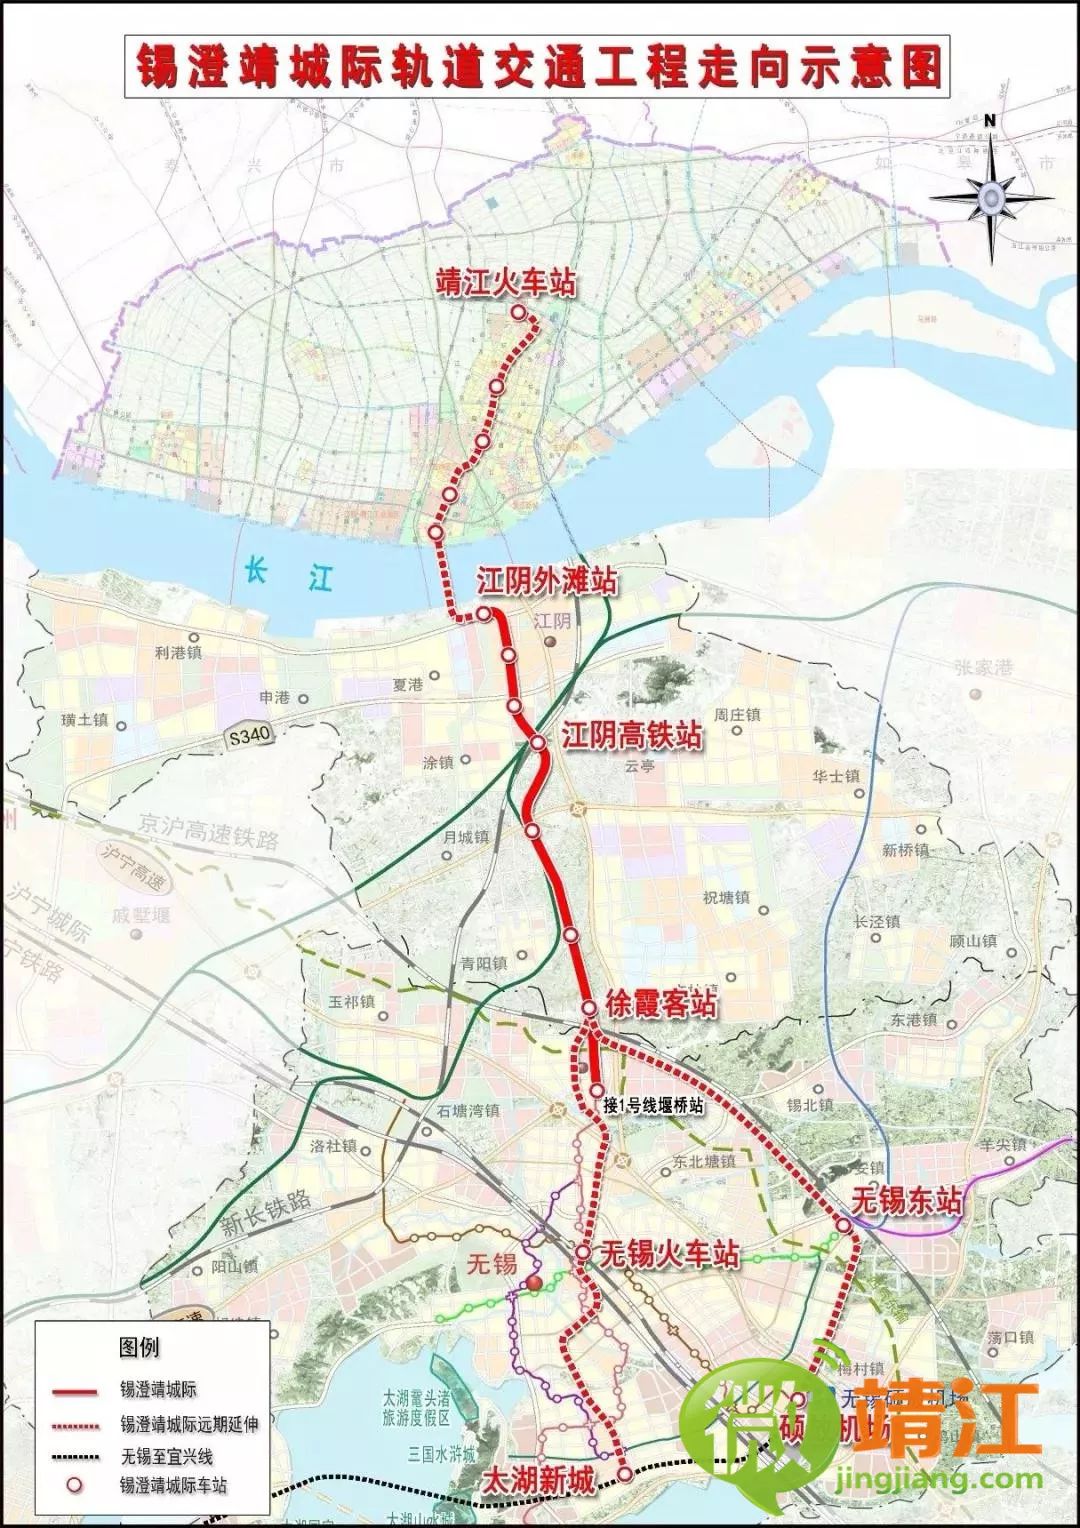 靖江长江隧道来了!双向6车道,明年开工2025年建成!